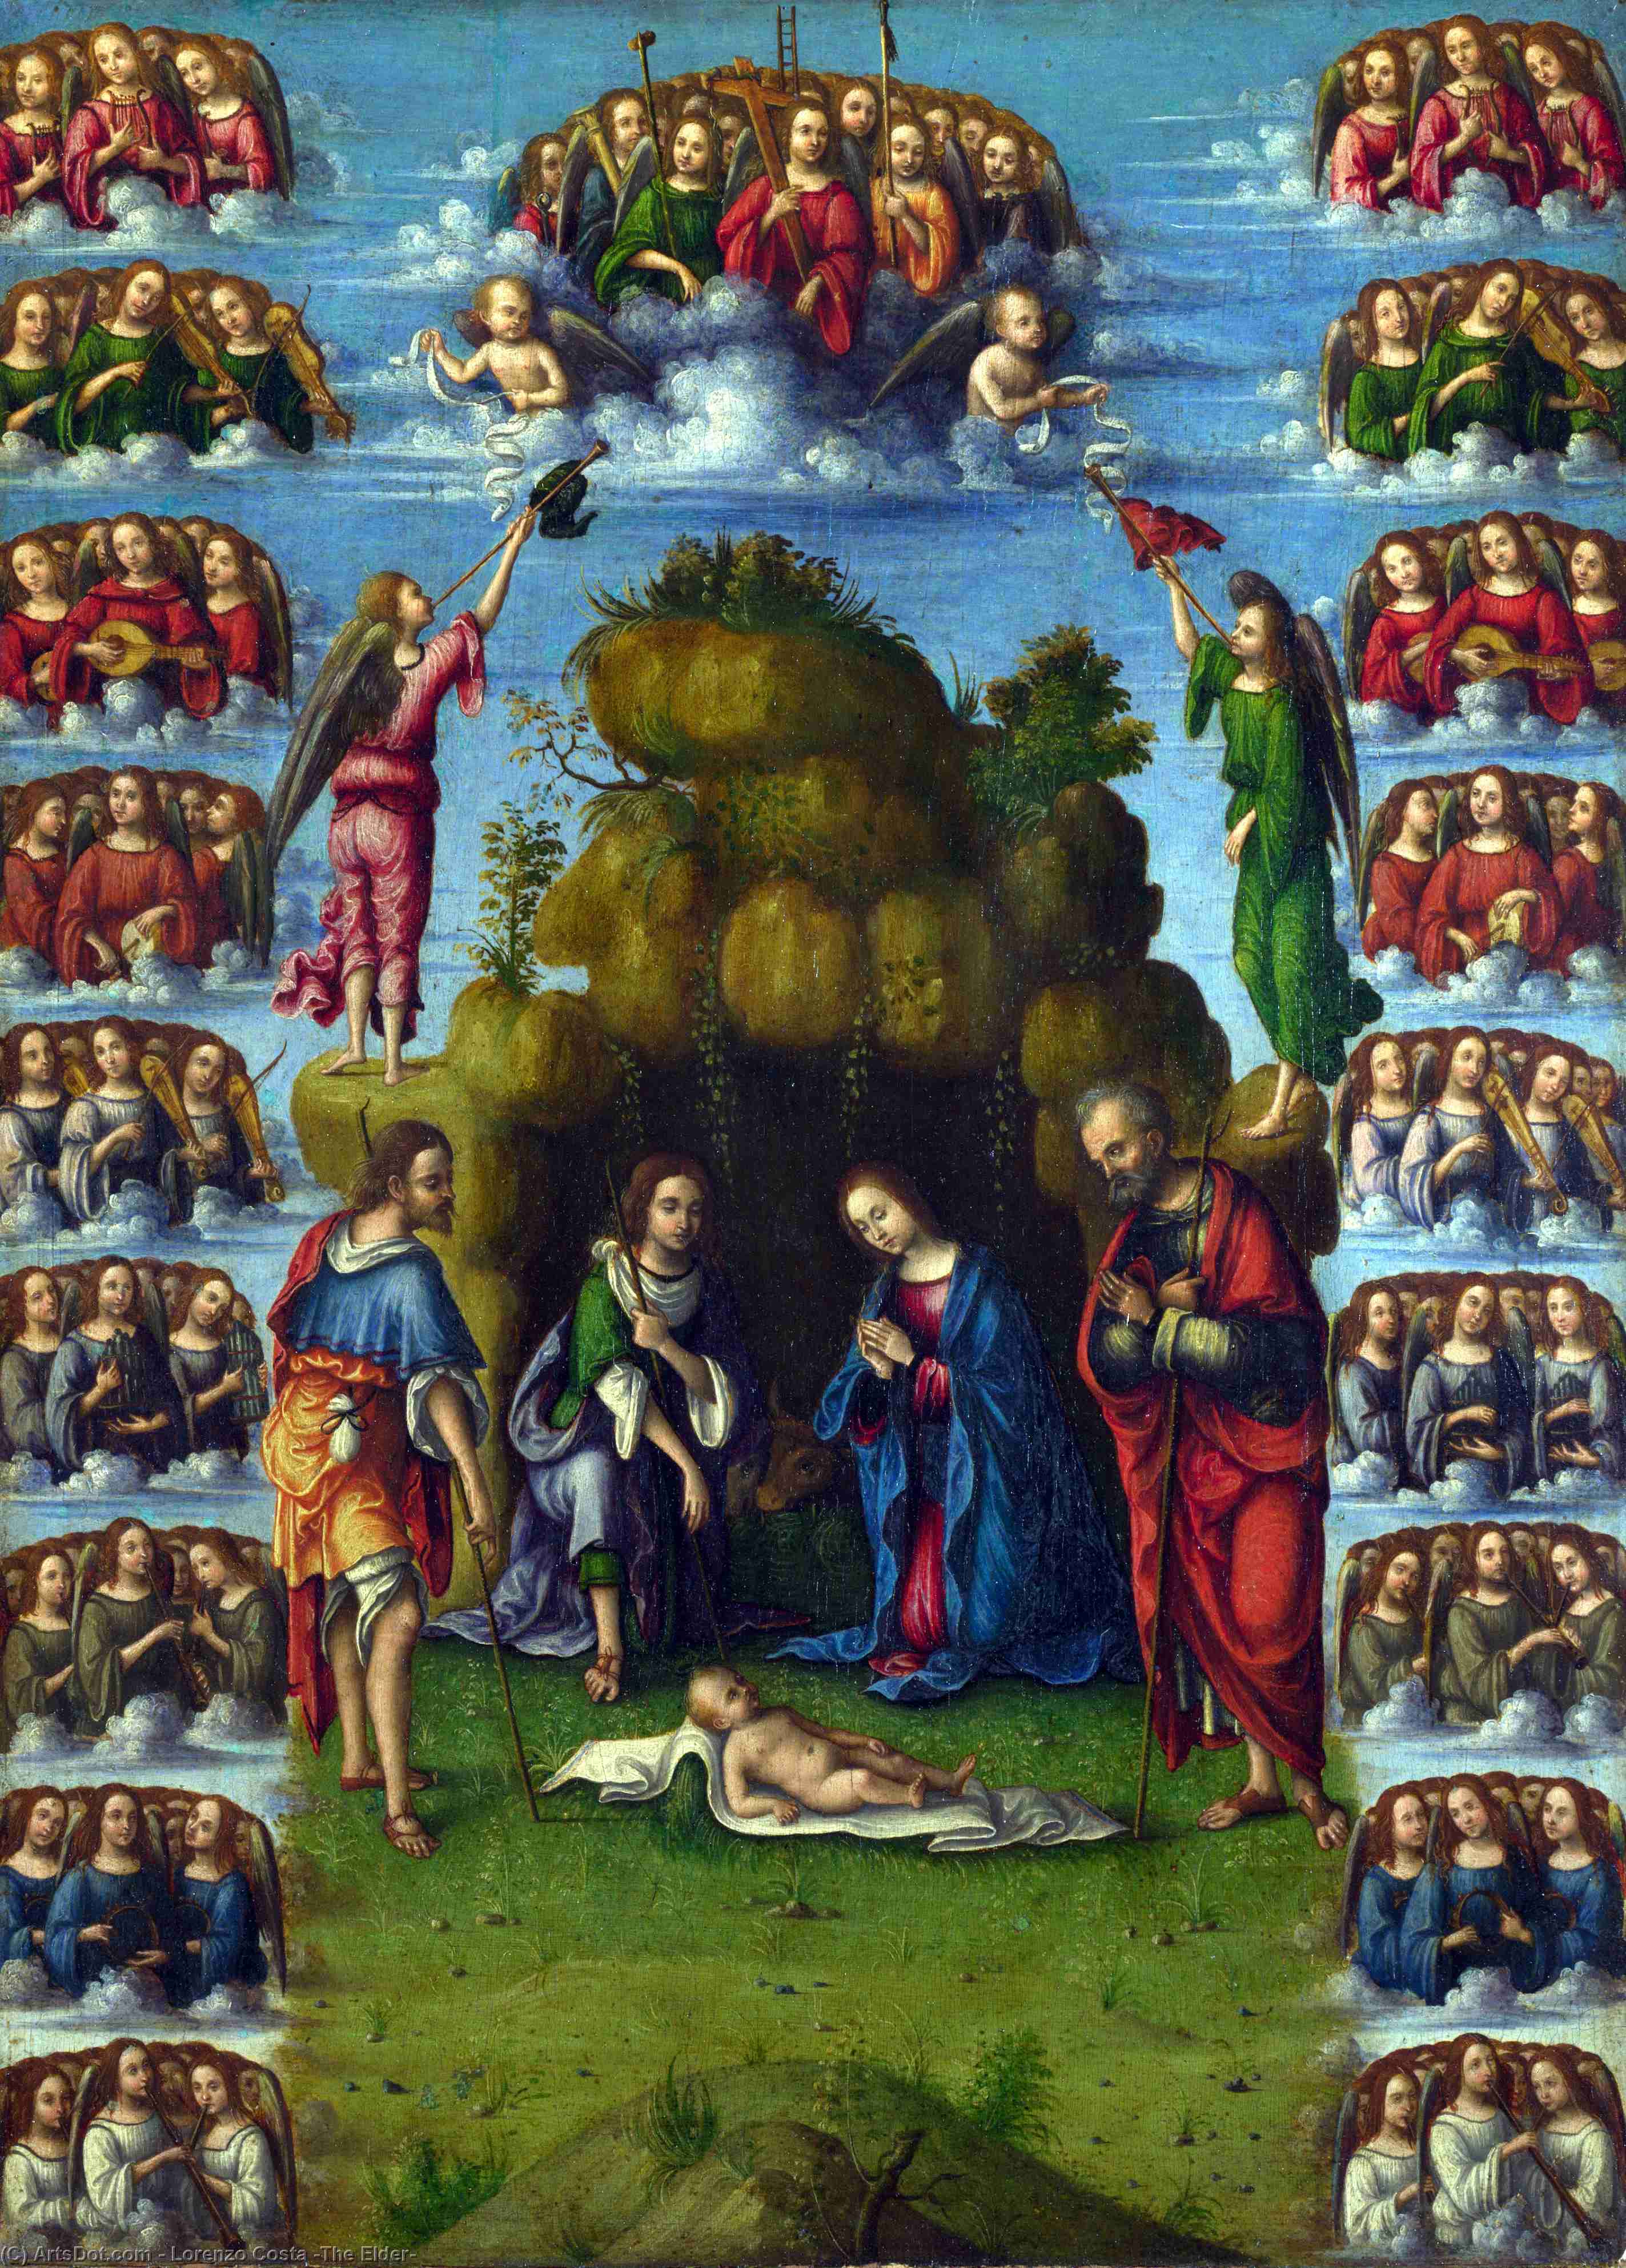 WikiOO.org - Enciclopédia das Belas Artes - Pintura, Arte por Lorenzo Costa (The Elder) - Adoration of the Shepherds with Angels